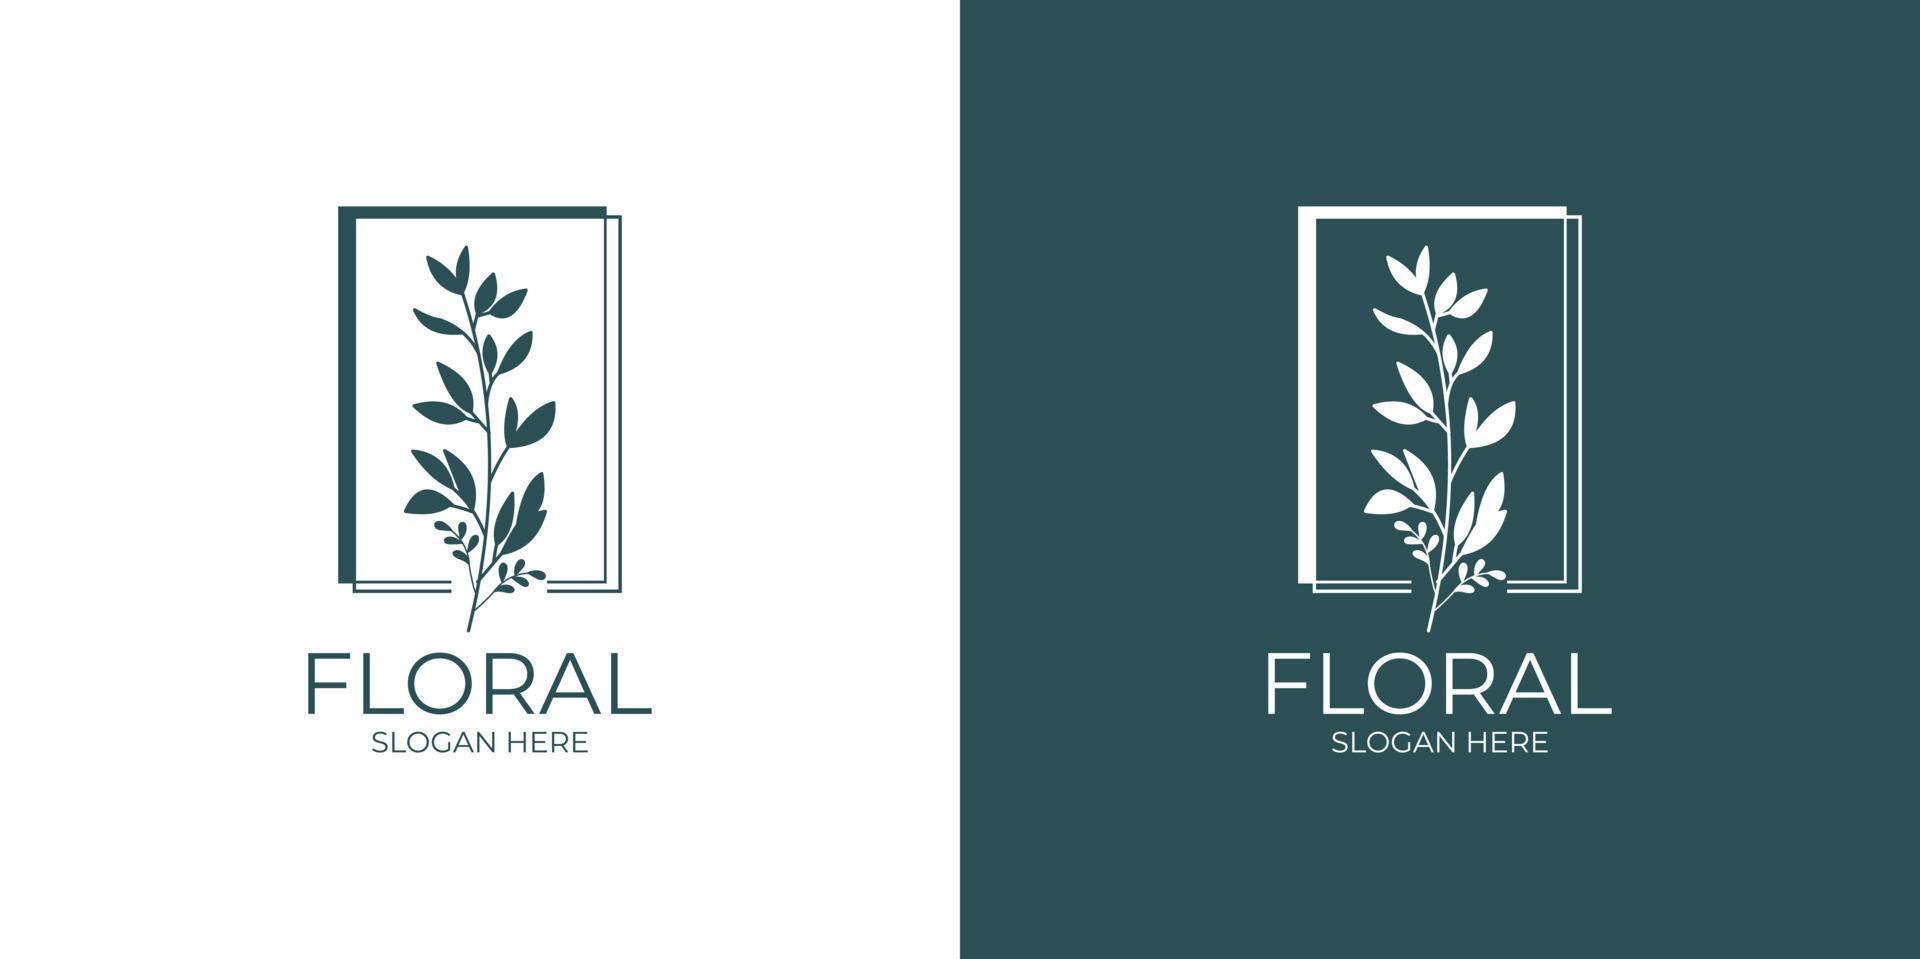 ensemble de logo floral moderne et minimaliste vecteur